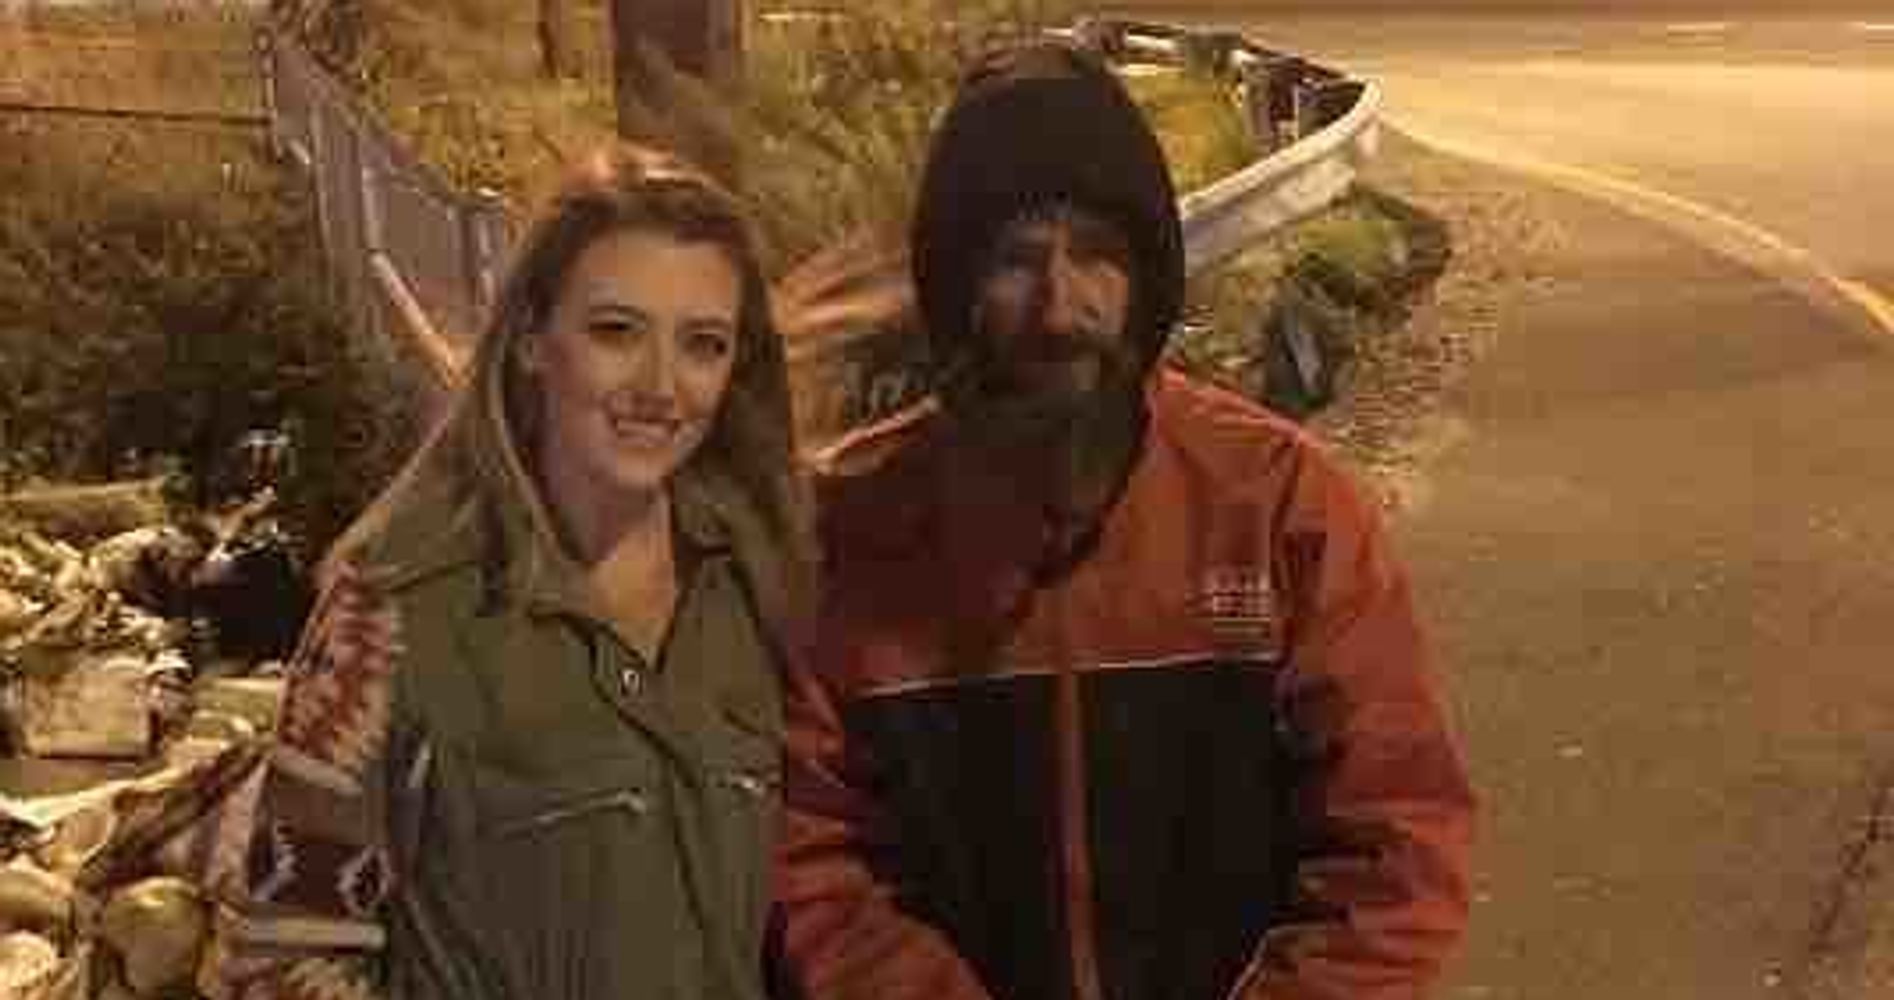 Cops Raid Home Of Couple Who Raised Gofundme Money For Homeless Vet